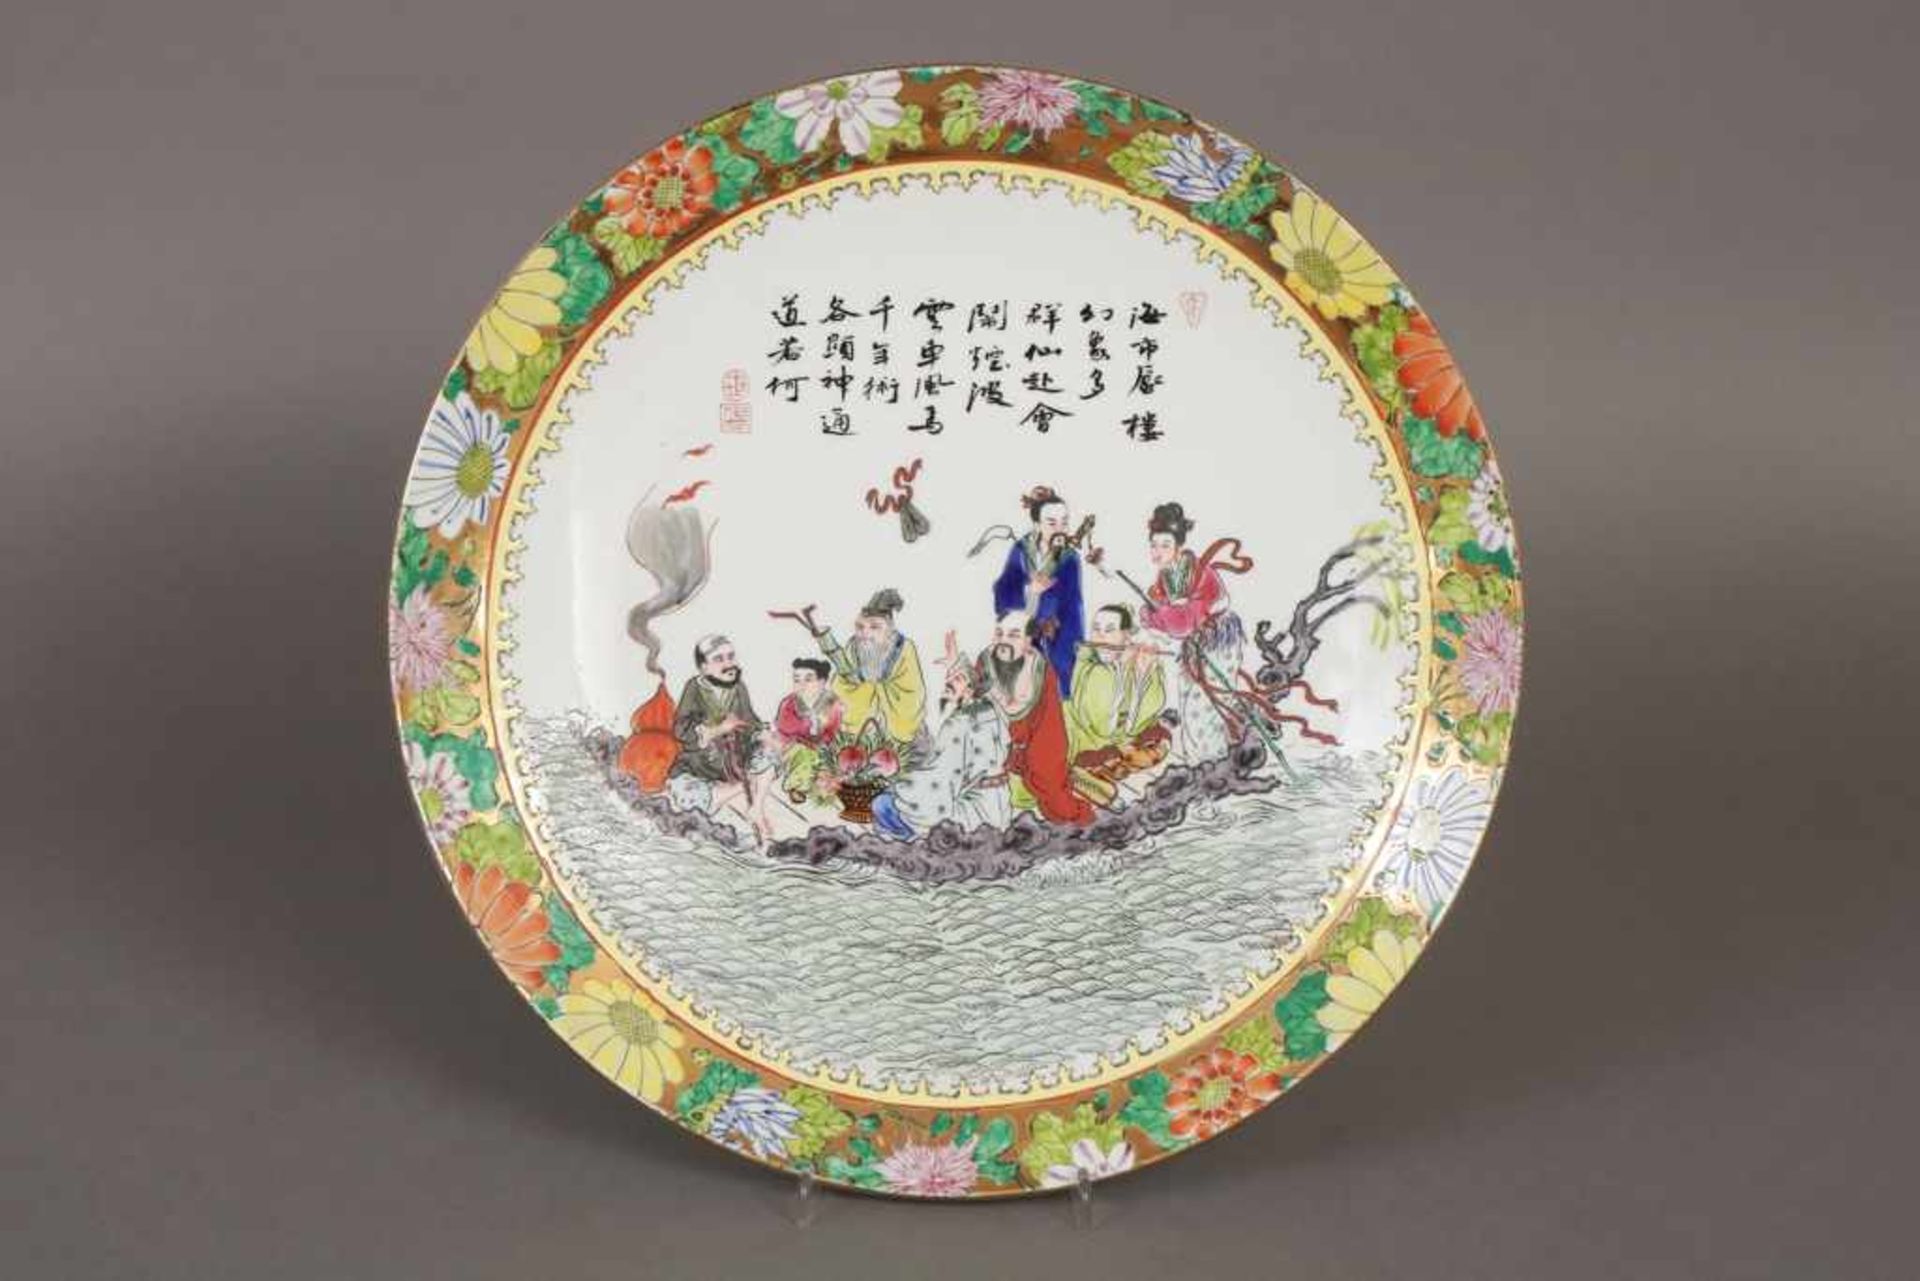 Chinesischer Porzellanteller Spiegel mit mythologischer Darstellung ¨Floßfahrt¨, Goldstaffage, Fahne